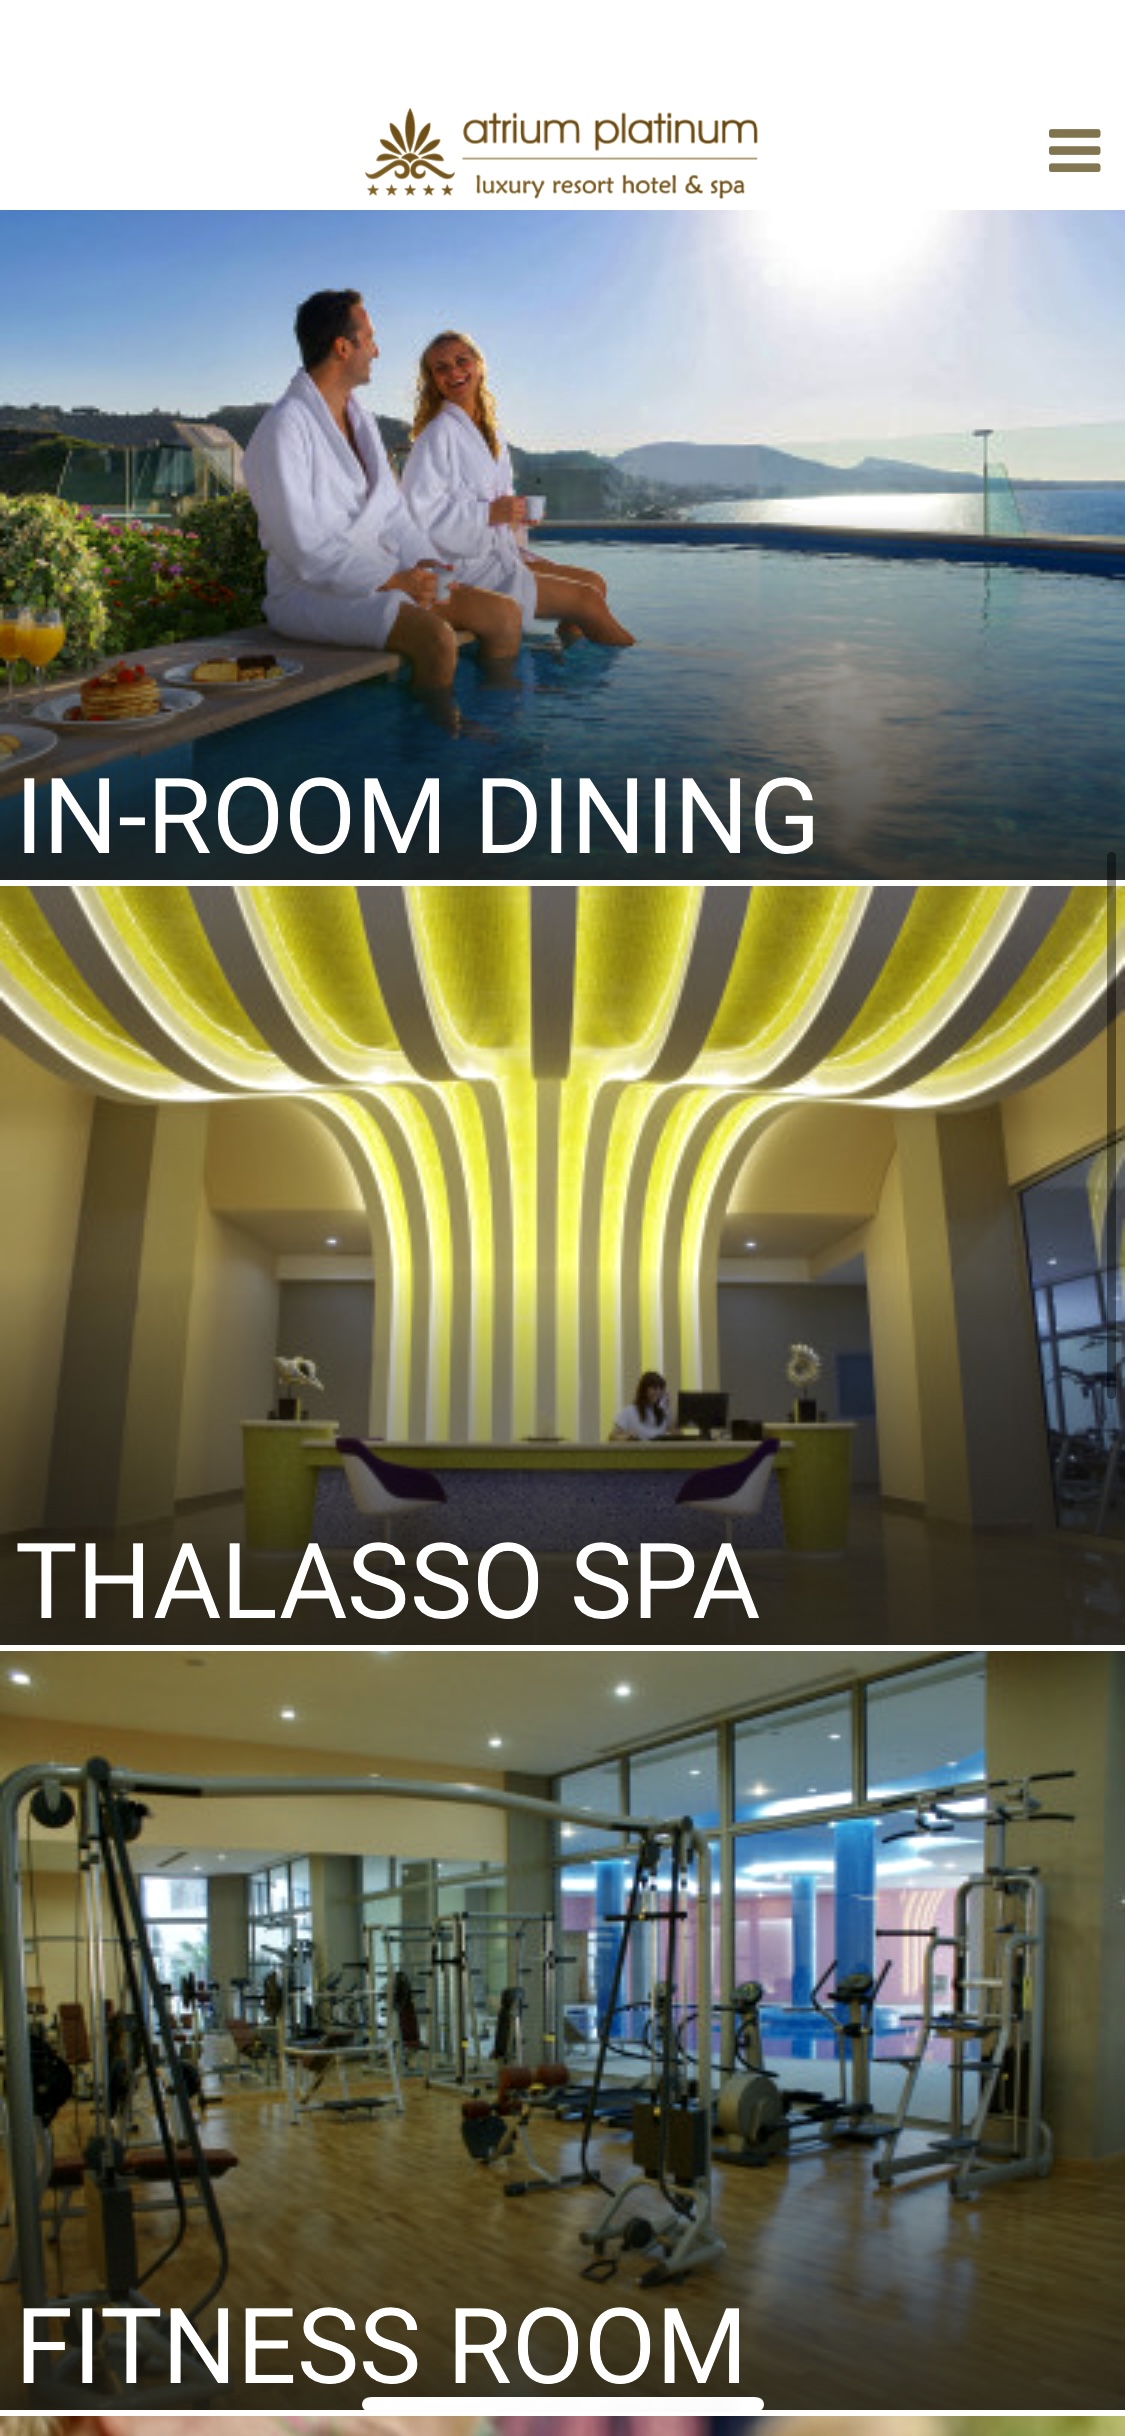 Holiday in Rhodes, Greece. Atrium Hotels. Atrium Platinum Resort Hotel & Spa. Best Hotels in Rhodes | Thalasso Spa